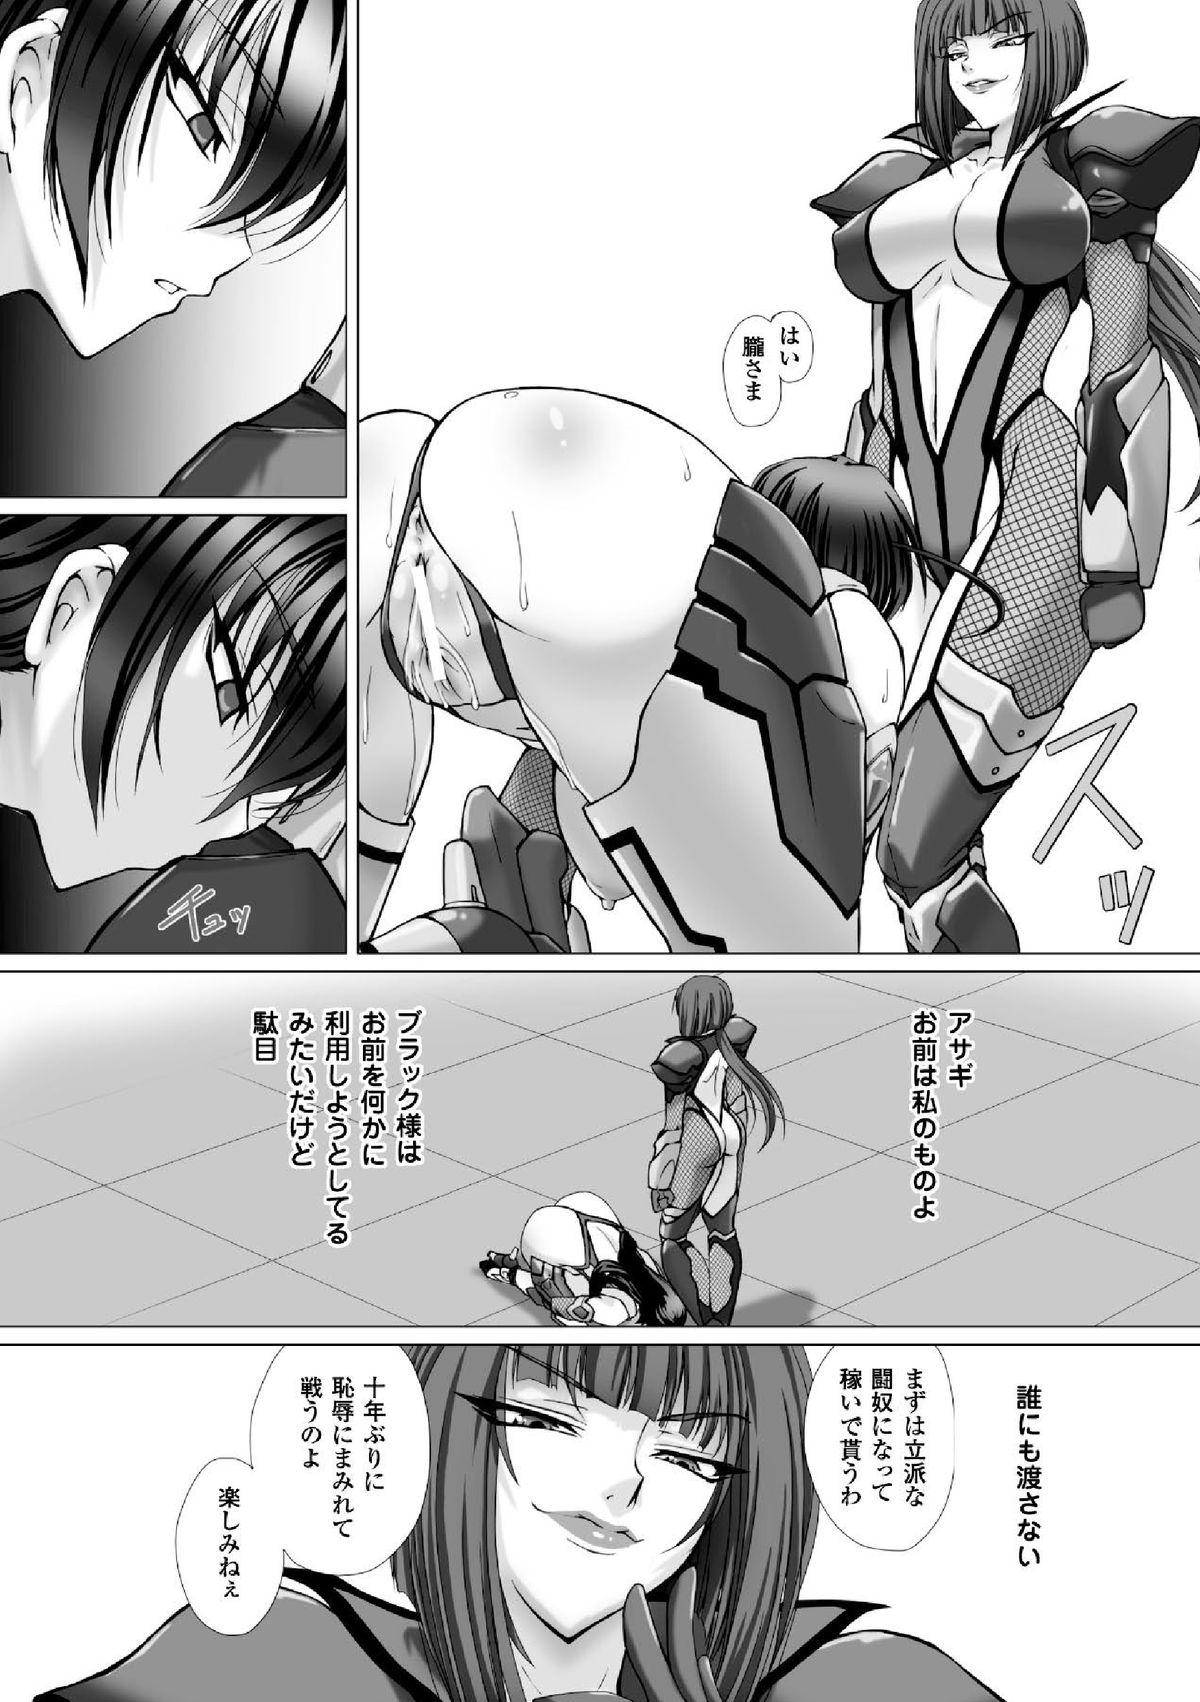 Nalgas Megami Crisis 16 - Taimanin asagi Kangoku senkan Koutetsu no majo annerose Travesti - Page 10